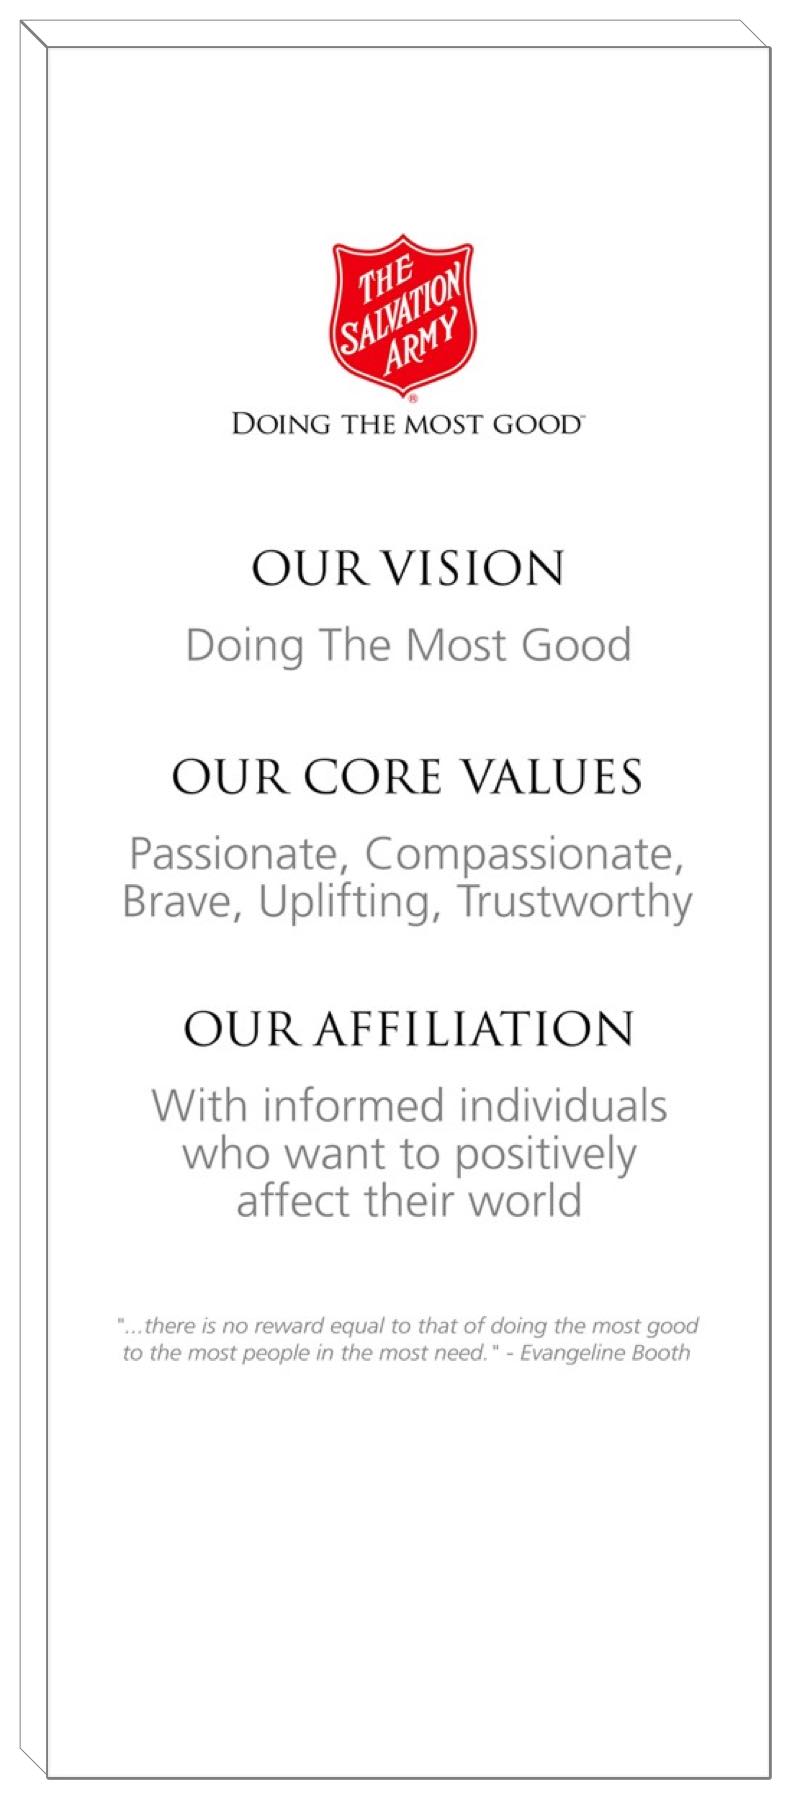 Vision / Values / Affiliation Canvas